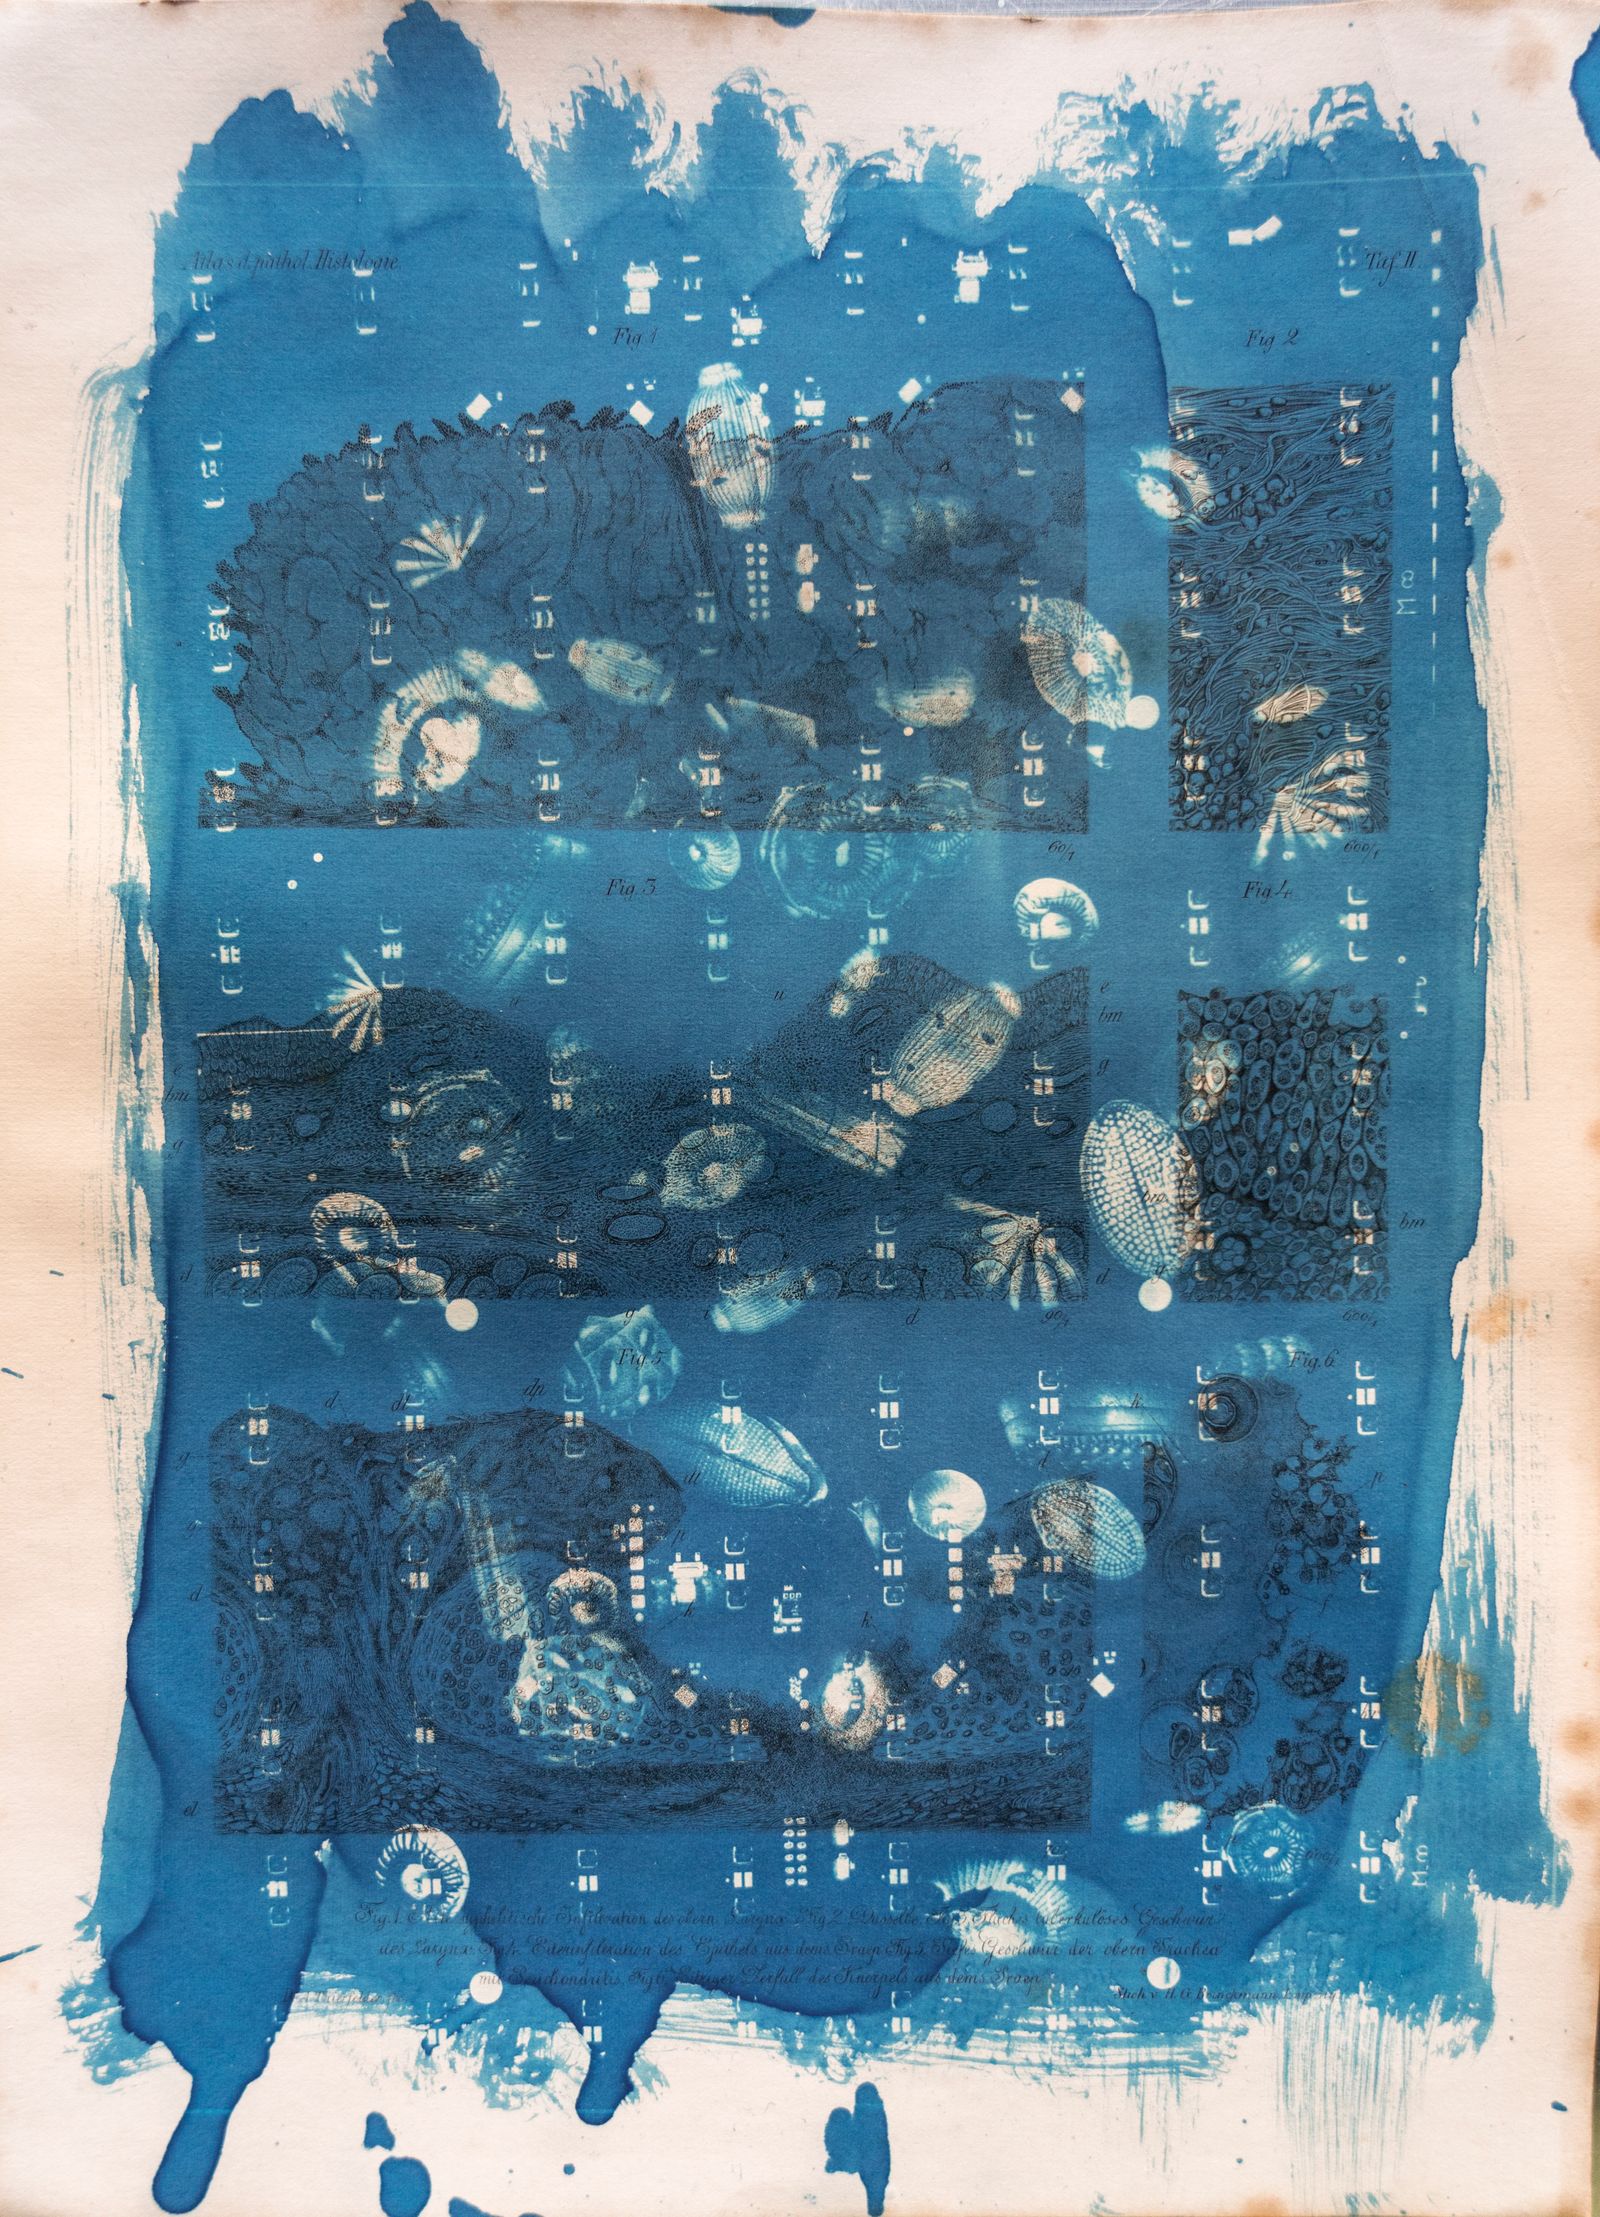 © Florence Iff - Amalgamated Fragmentation/ Technosphere 5 cyanotype on vintage lithography